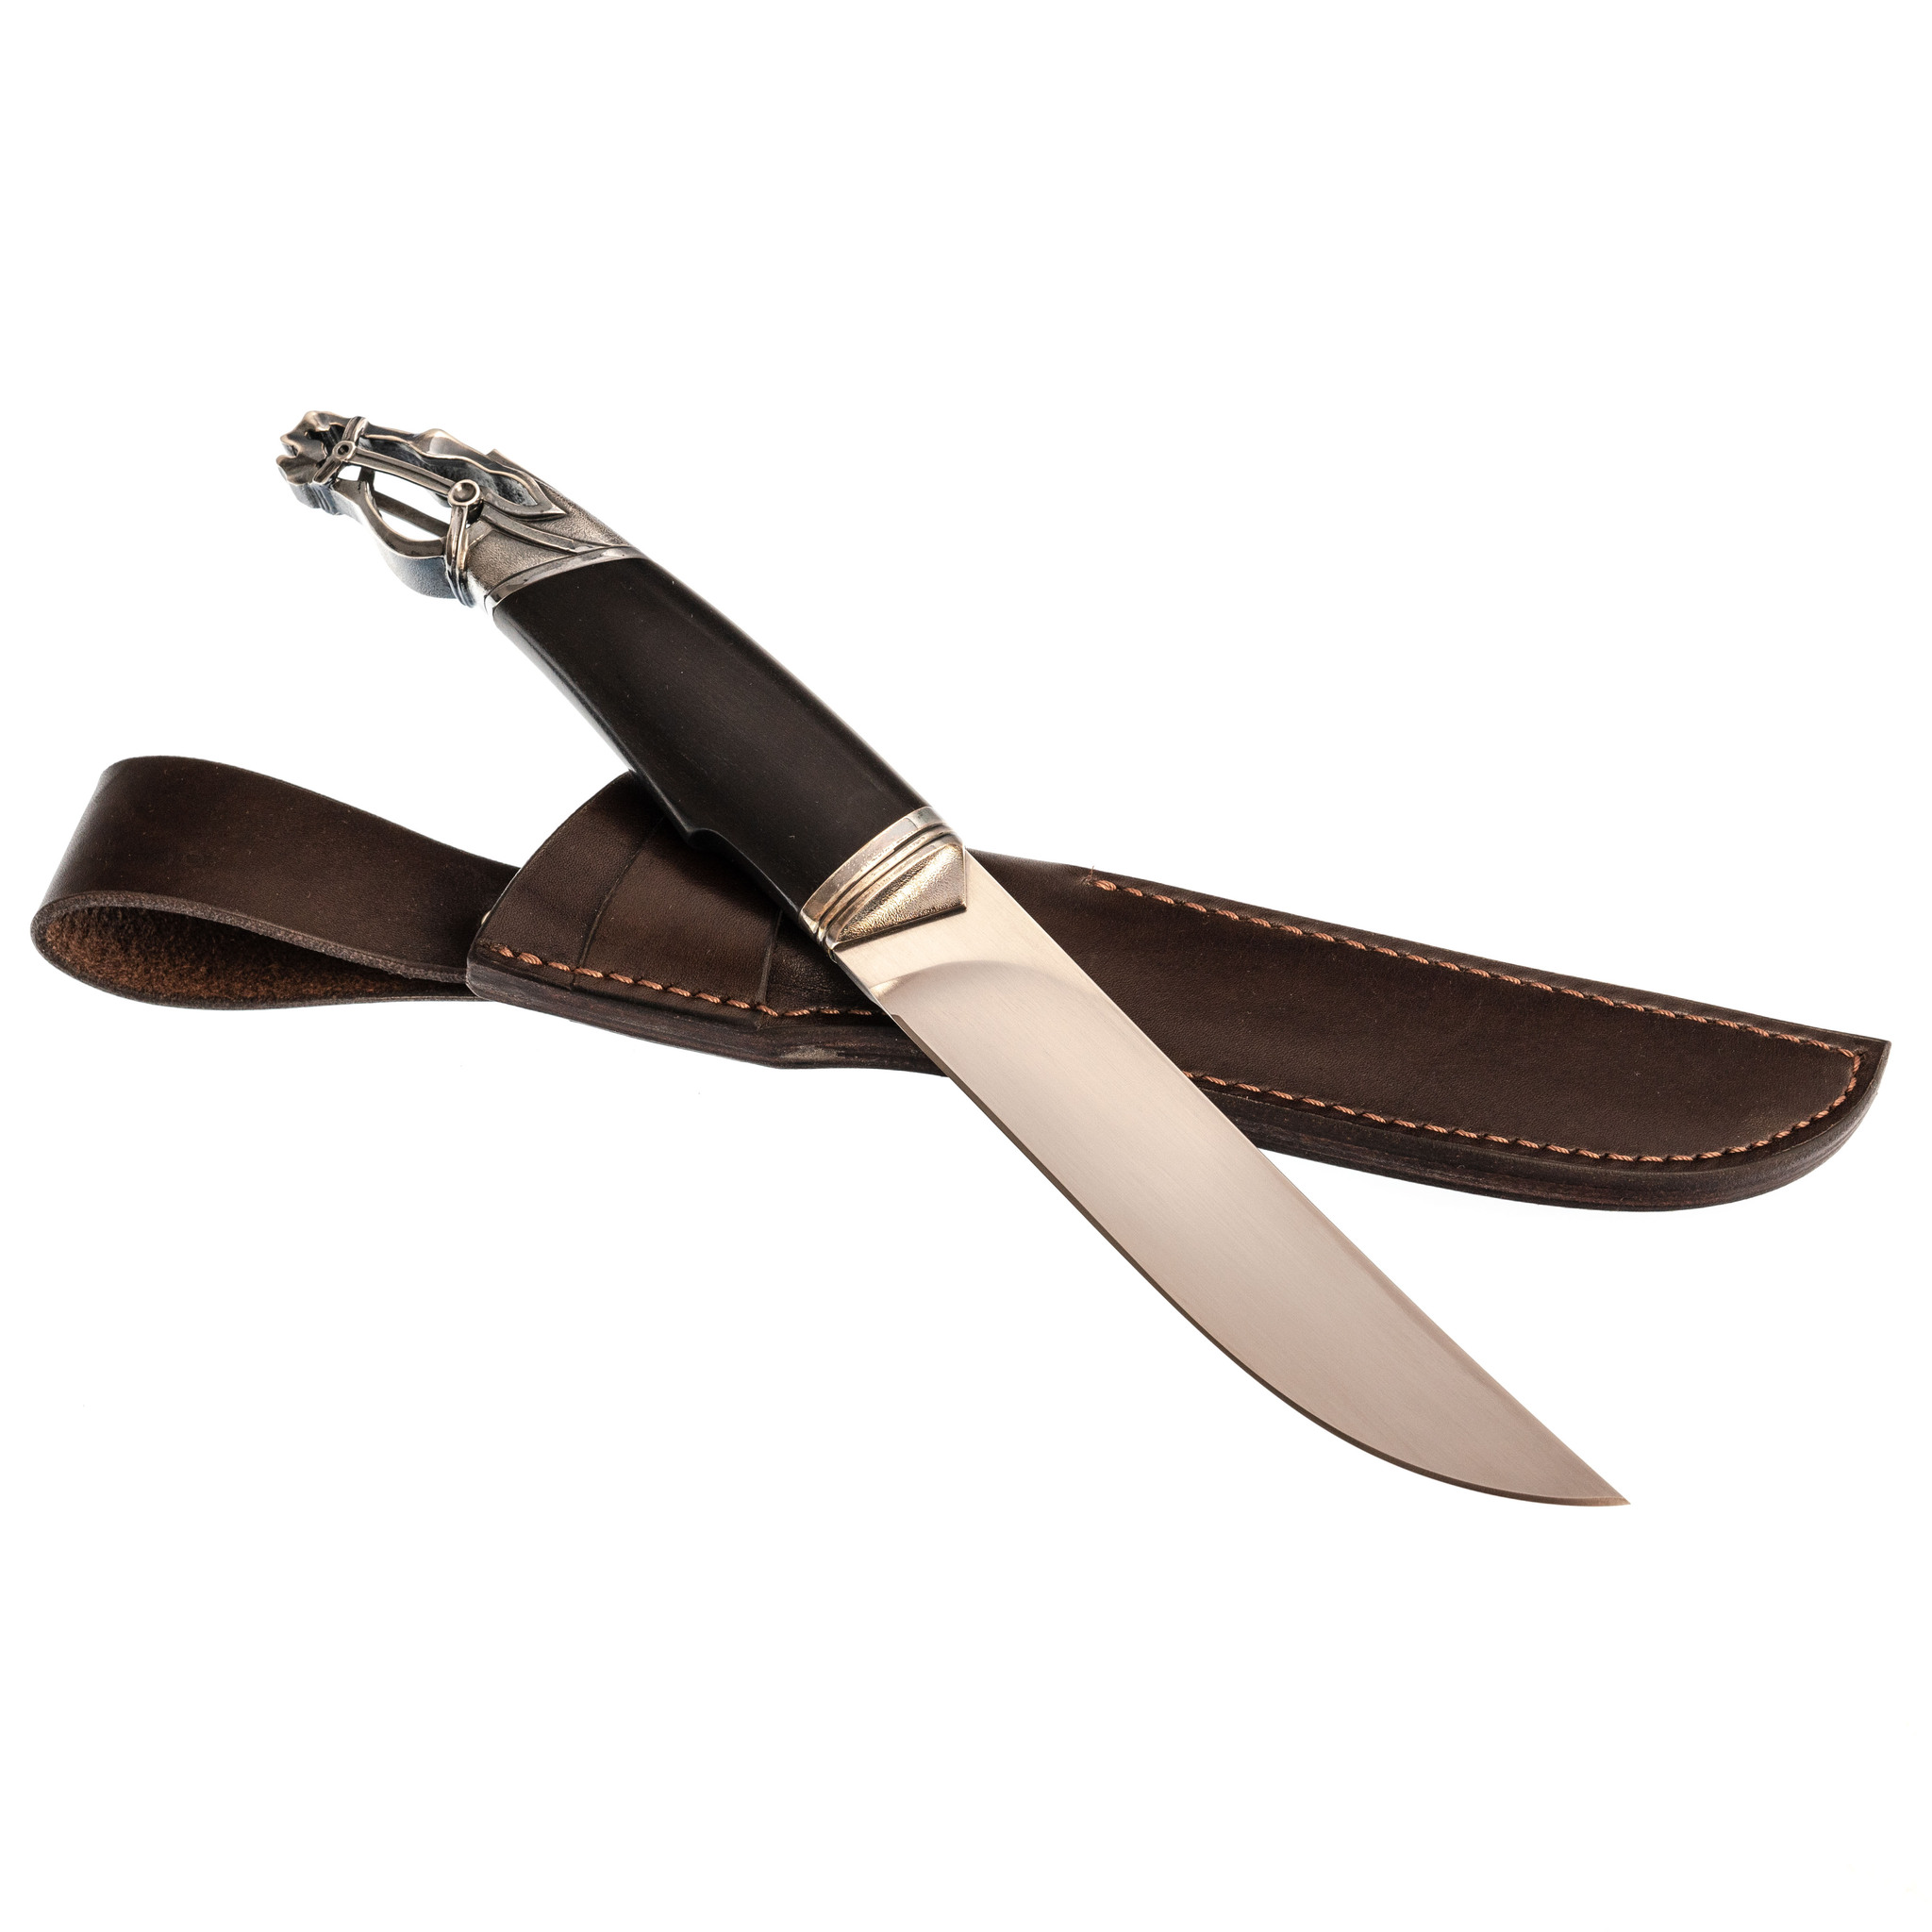 Подарочный нож Сагаан Морин, многослойная сталь, рукоять моржовый клык - фото 5